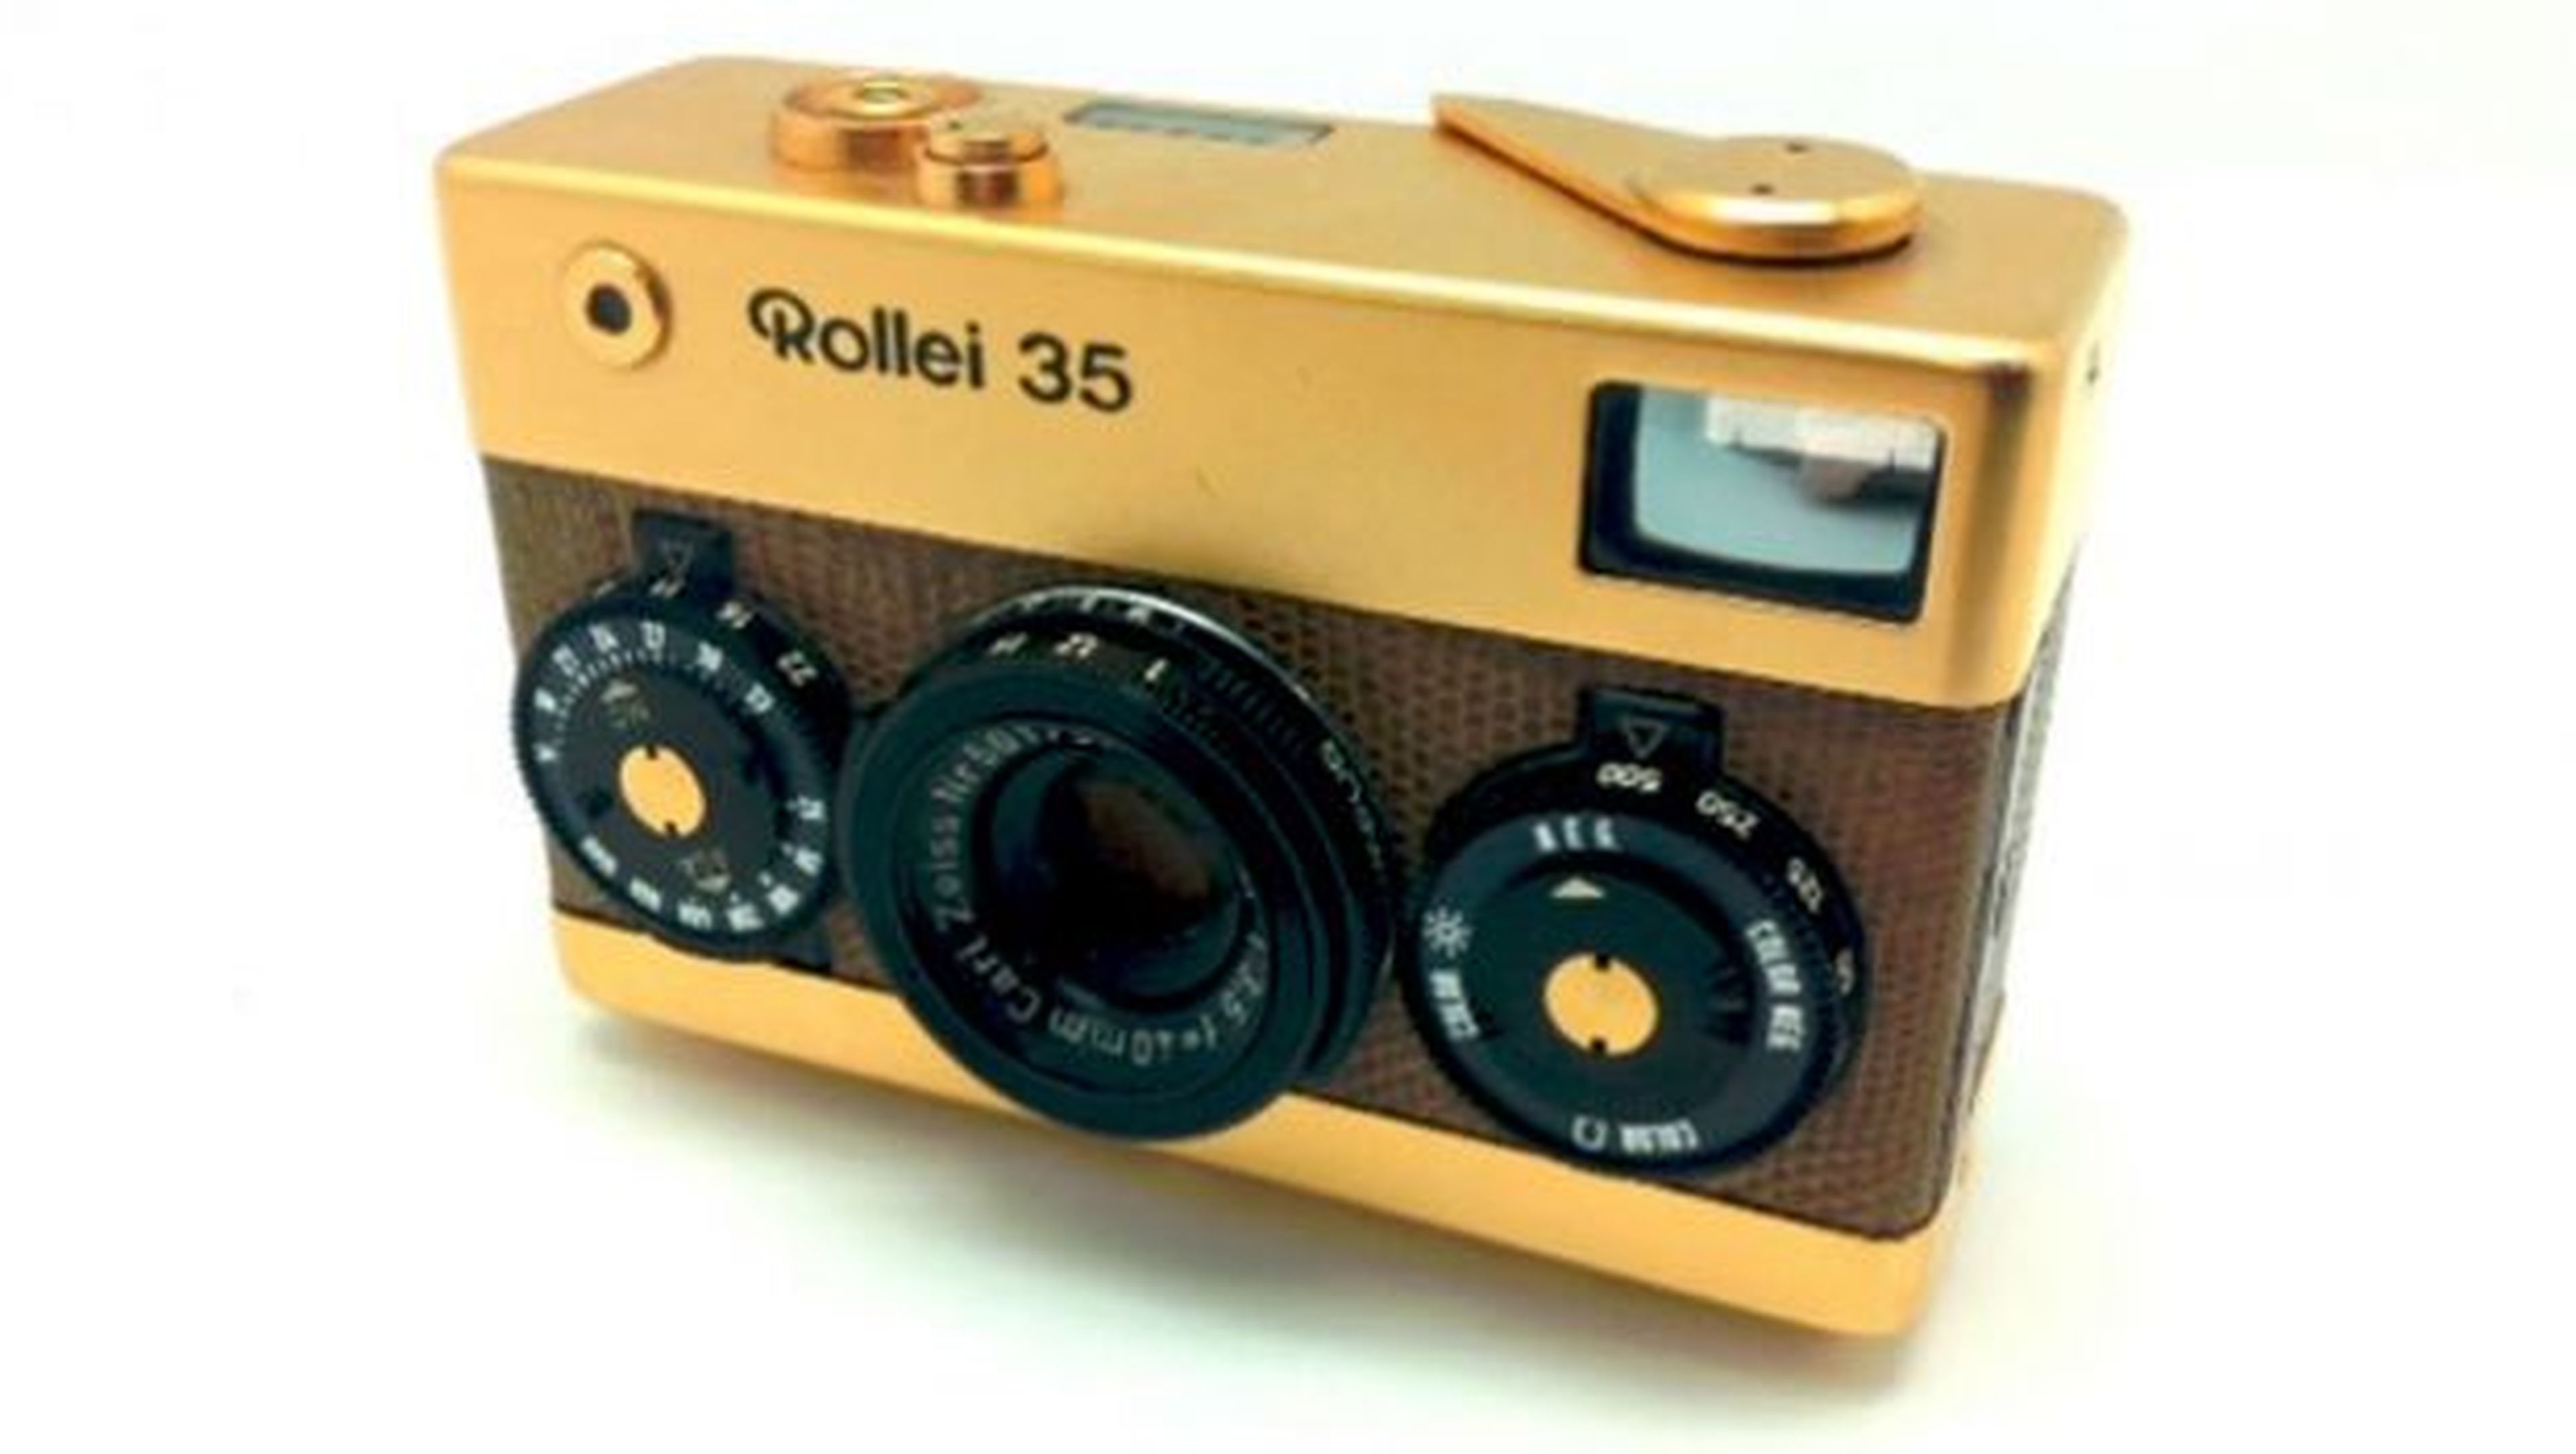 La cámara compacta Rollei 35 Gold es una pieza de colección fabricada en 1970 y de la cual solo se fabricaron 5.000 unidades.